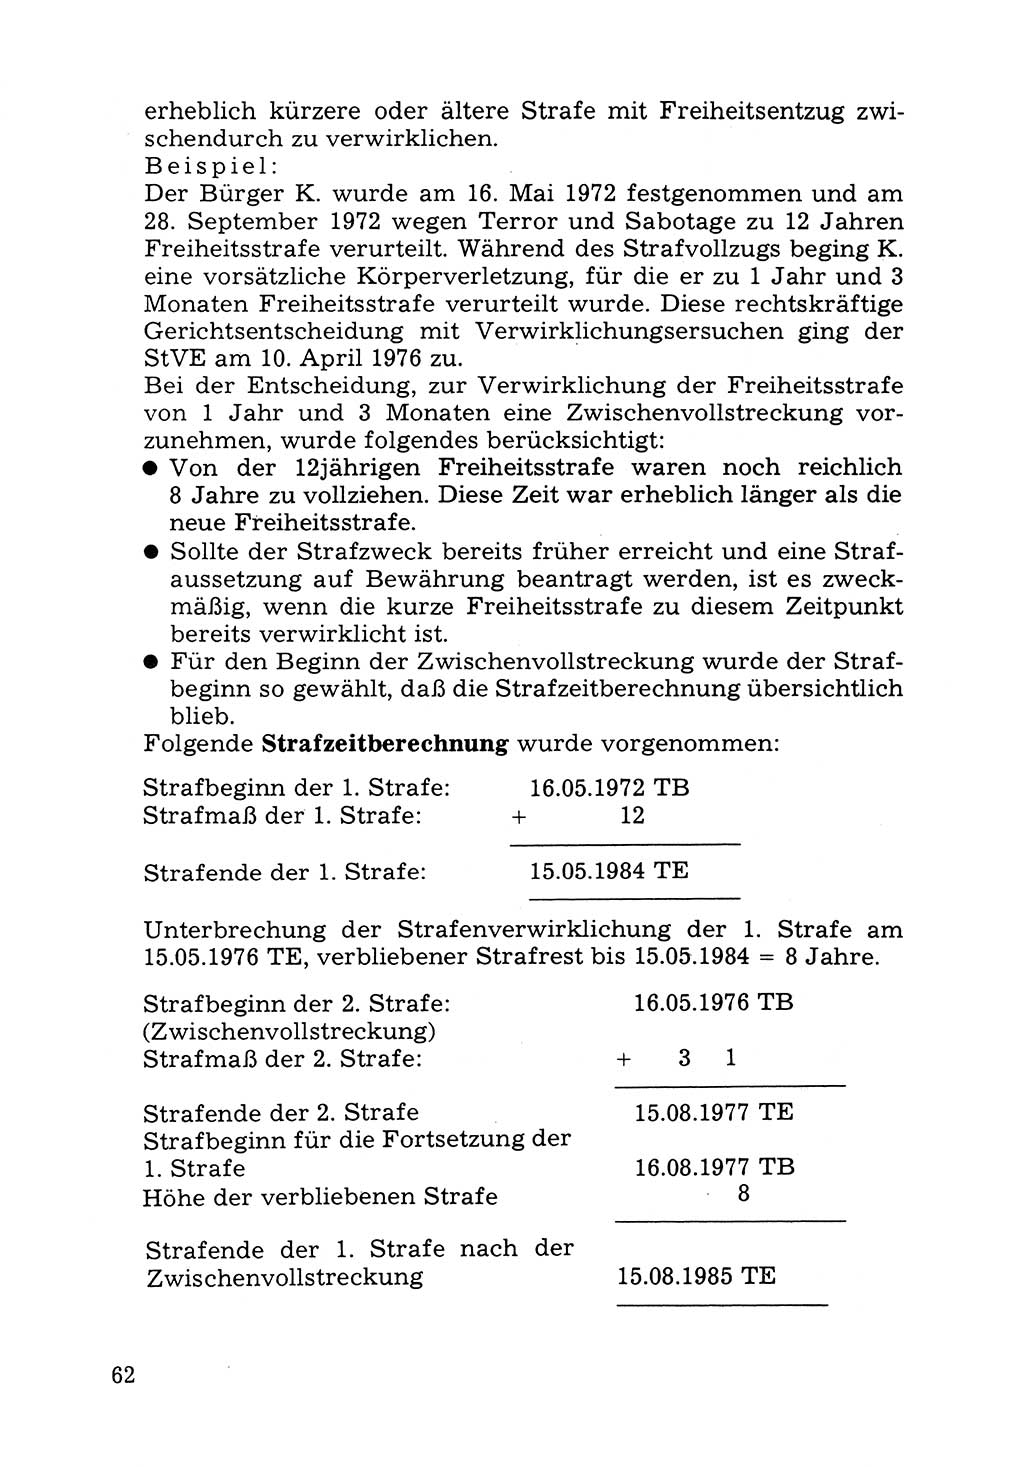 Verwaltungsmäßige Aufgaben beim Vollzug der Untersuchungshaft (U-Haft) sowie der Strafen mit Freiheitsentzug (SV) [Deutsche Demokratische Republik (DDR)] 1980, Seite 62 (Aufg. Vollz. U-Haft SV DDR 1980, S. 62)